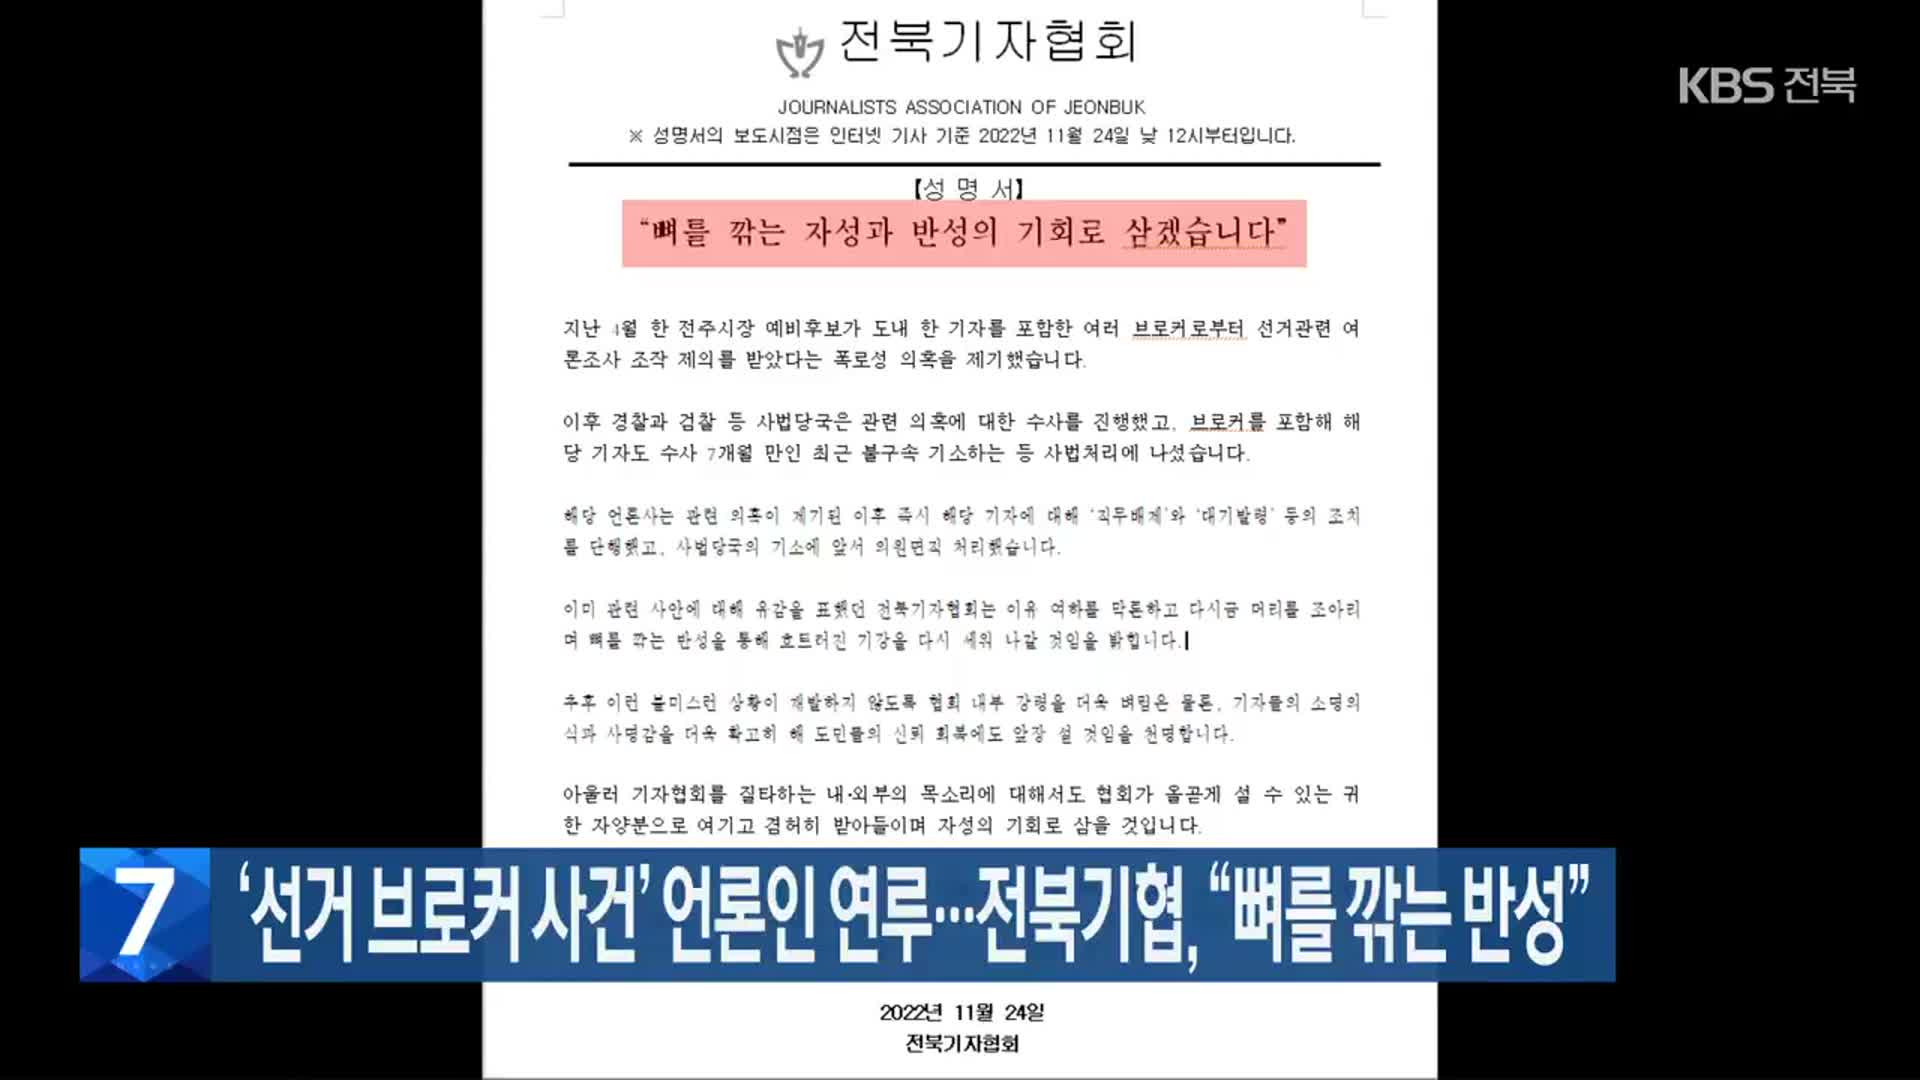 ‘선거 브로커 사건’ 언론인 연루…전북기협 “뼈를 깎는 반성”